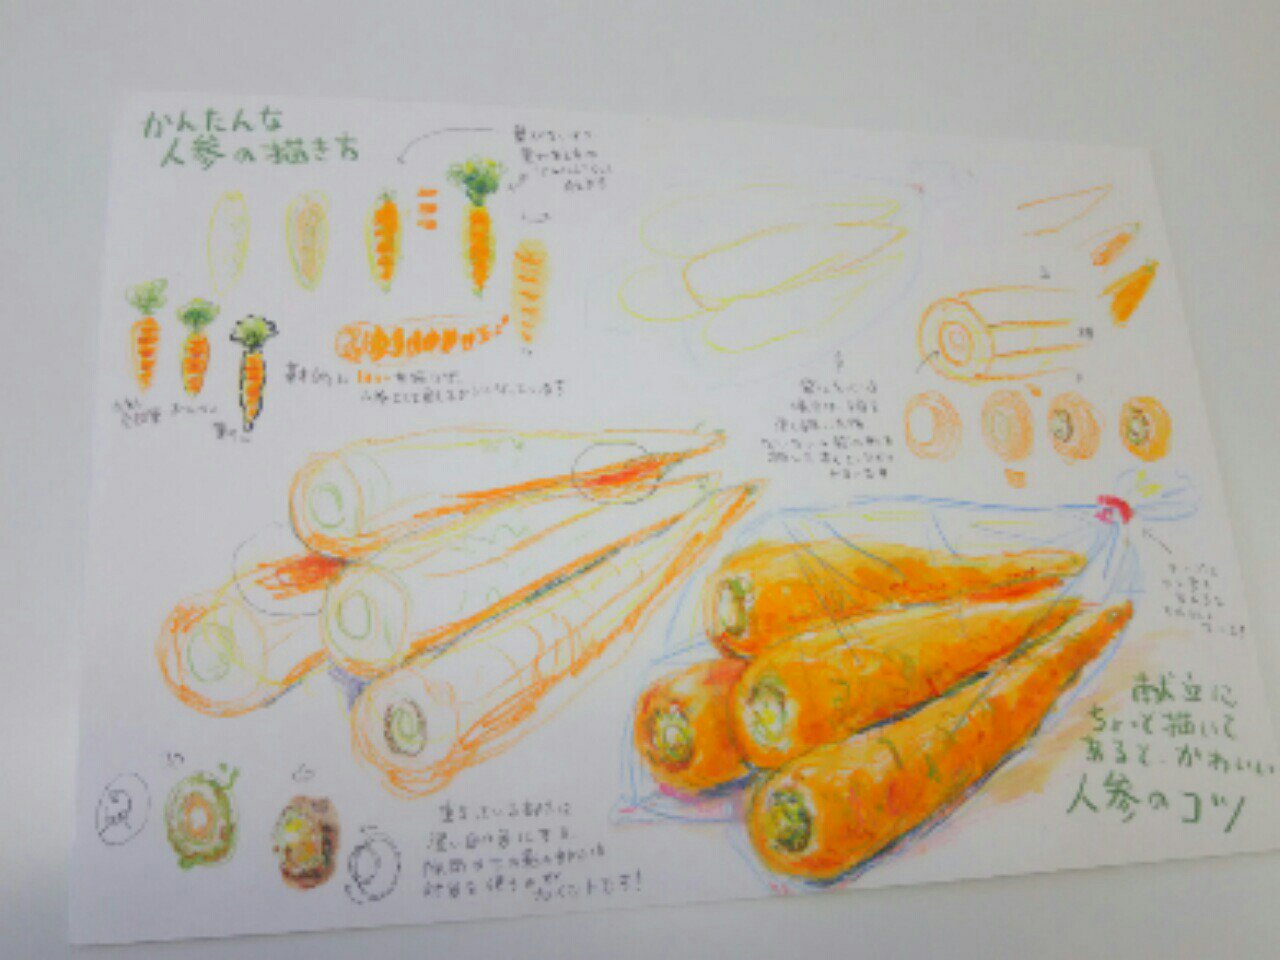 تويتر ギャラリーねこい 4月日亀田イオンカルチャースクールで水彩色鉛筆塗り絵教室をします على تويتر 本日のイラスト紹介 お店の体験教室用に描いた 朝市の野菜の描き方纏め 絵なんて授業でやったぐらい という方が多いので説明文はゆるゆるです 水彩